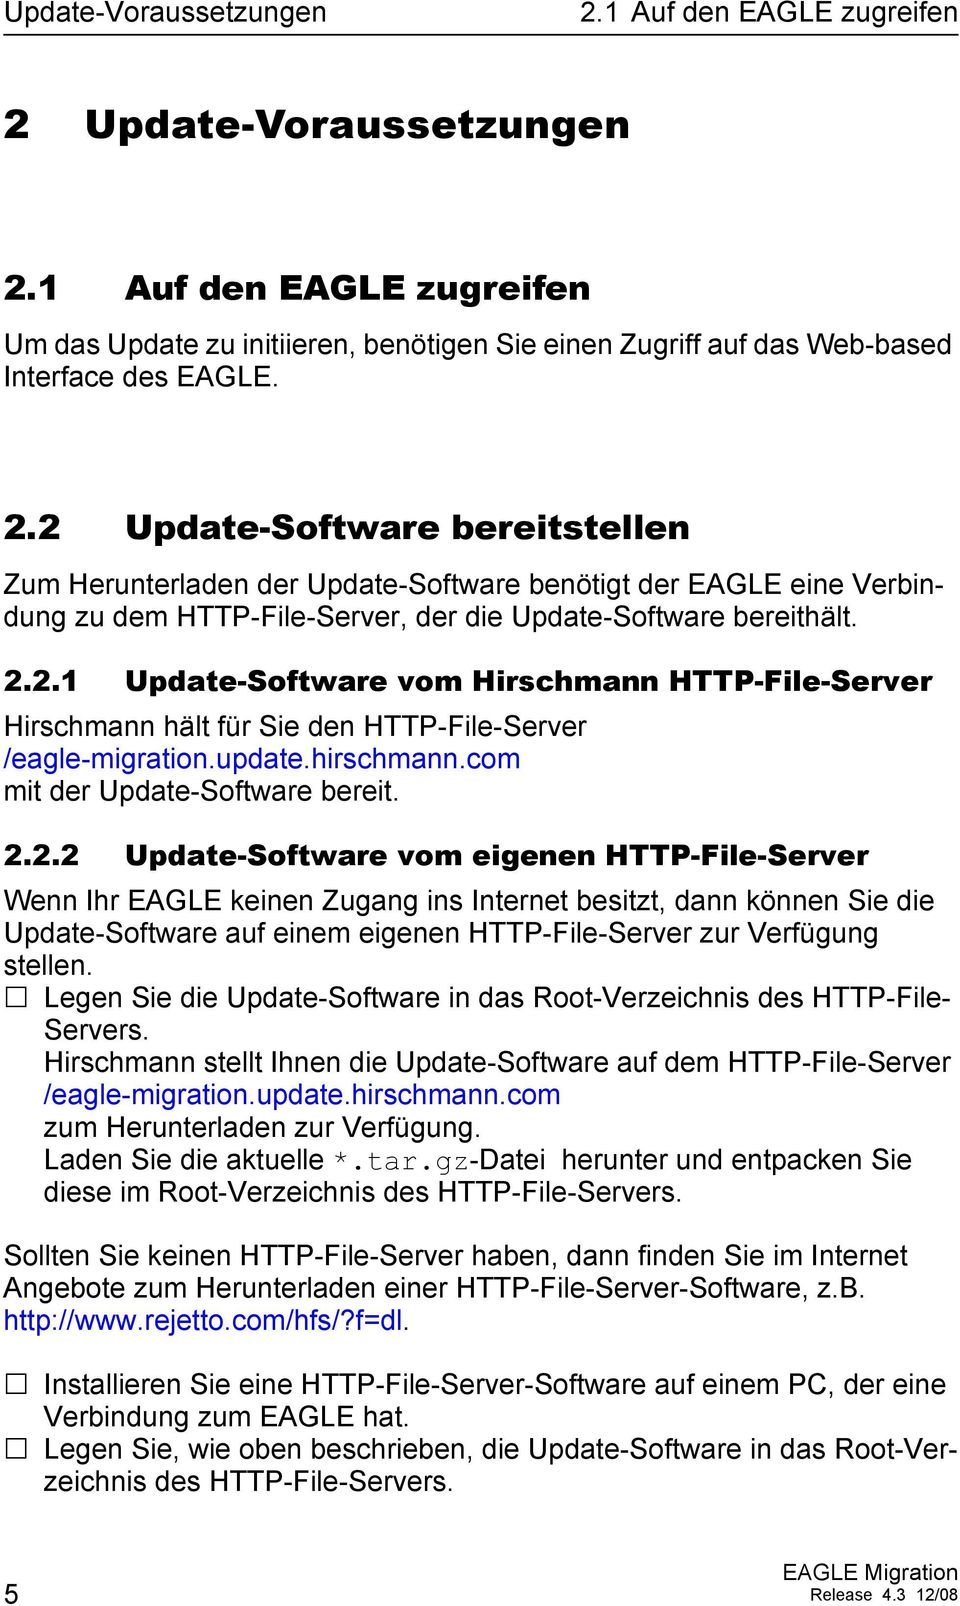 2.1 Update-Software vom Hirschmann HTTP-File-Server Hirschmann hält für Sie den HTTP-File-Server /eagle-migration.update.hirschmann.com mit der Update-Software bereit. 2.2.2 Update-Software vom eigenen HTTP-File-Server Wenn Ihr EAGLE keinen Zugang ins Internet besitzt, dann können Sie die Update-Software auf einem eigenen HTTP-File-Server zur Verfügung stellen.